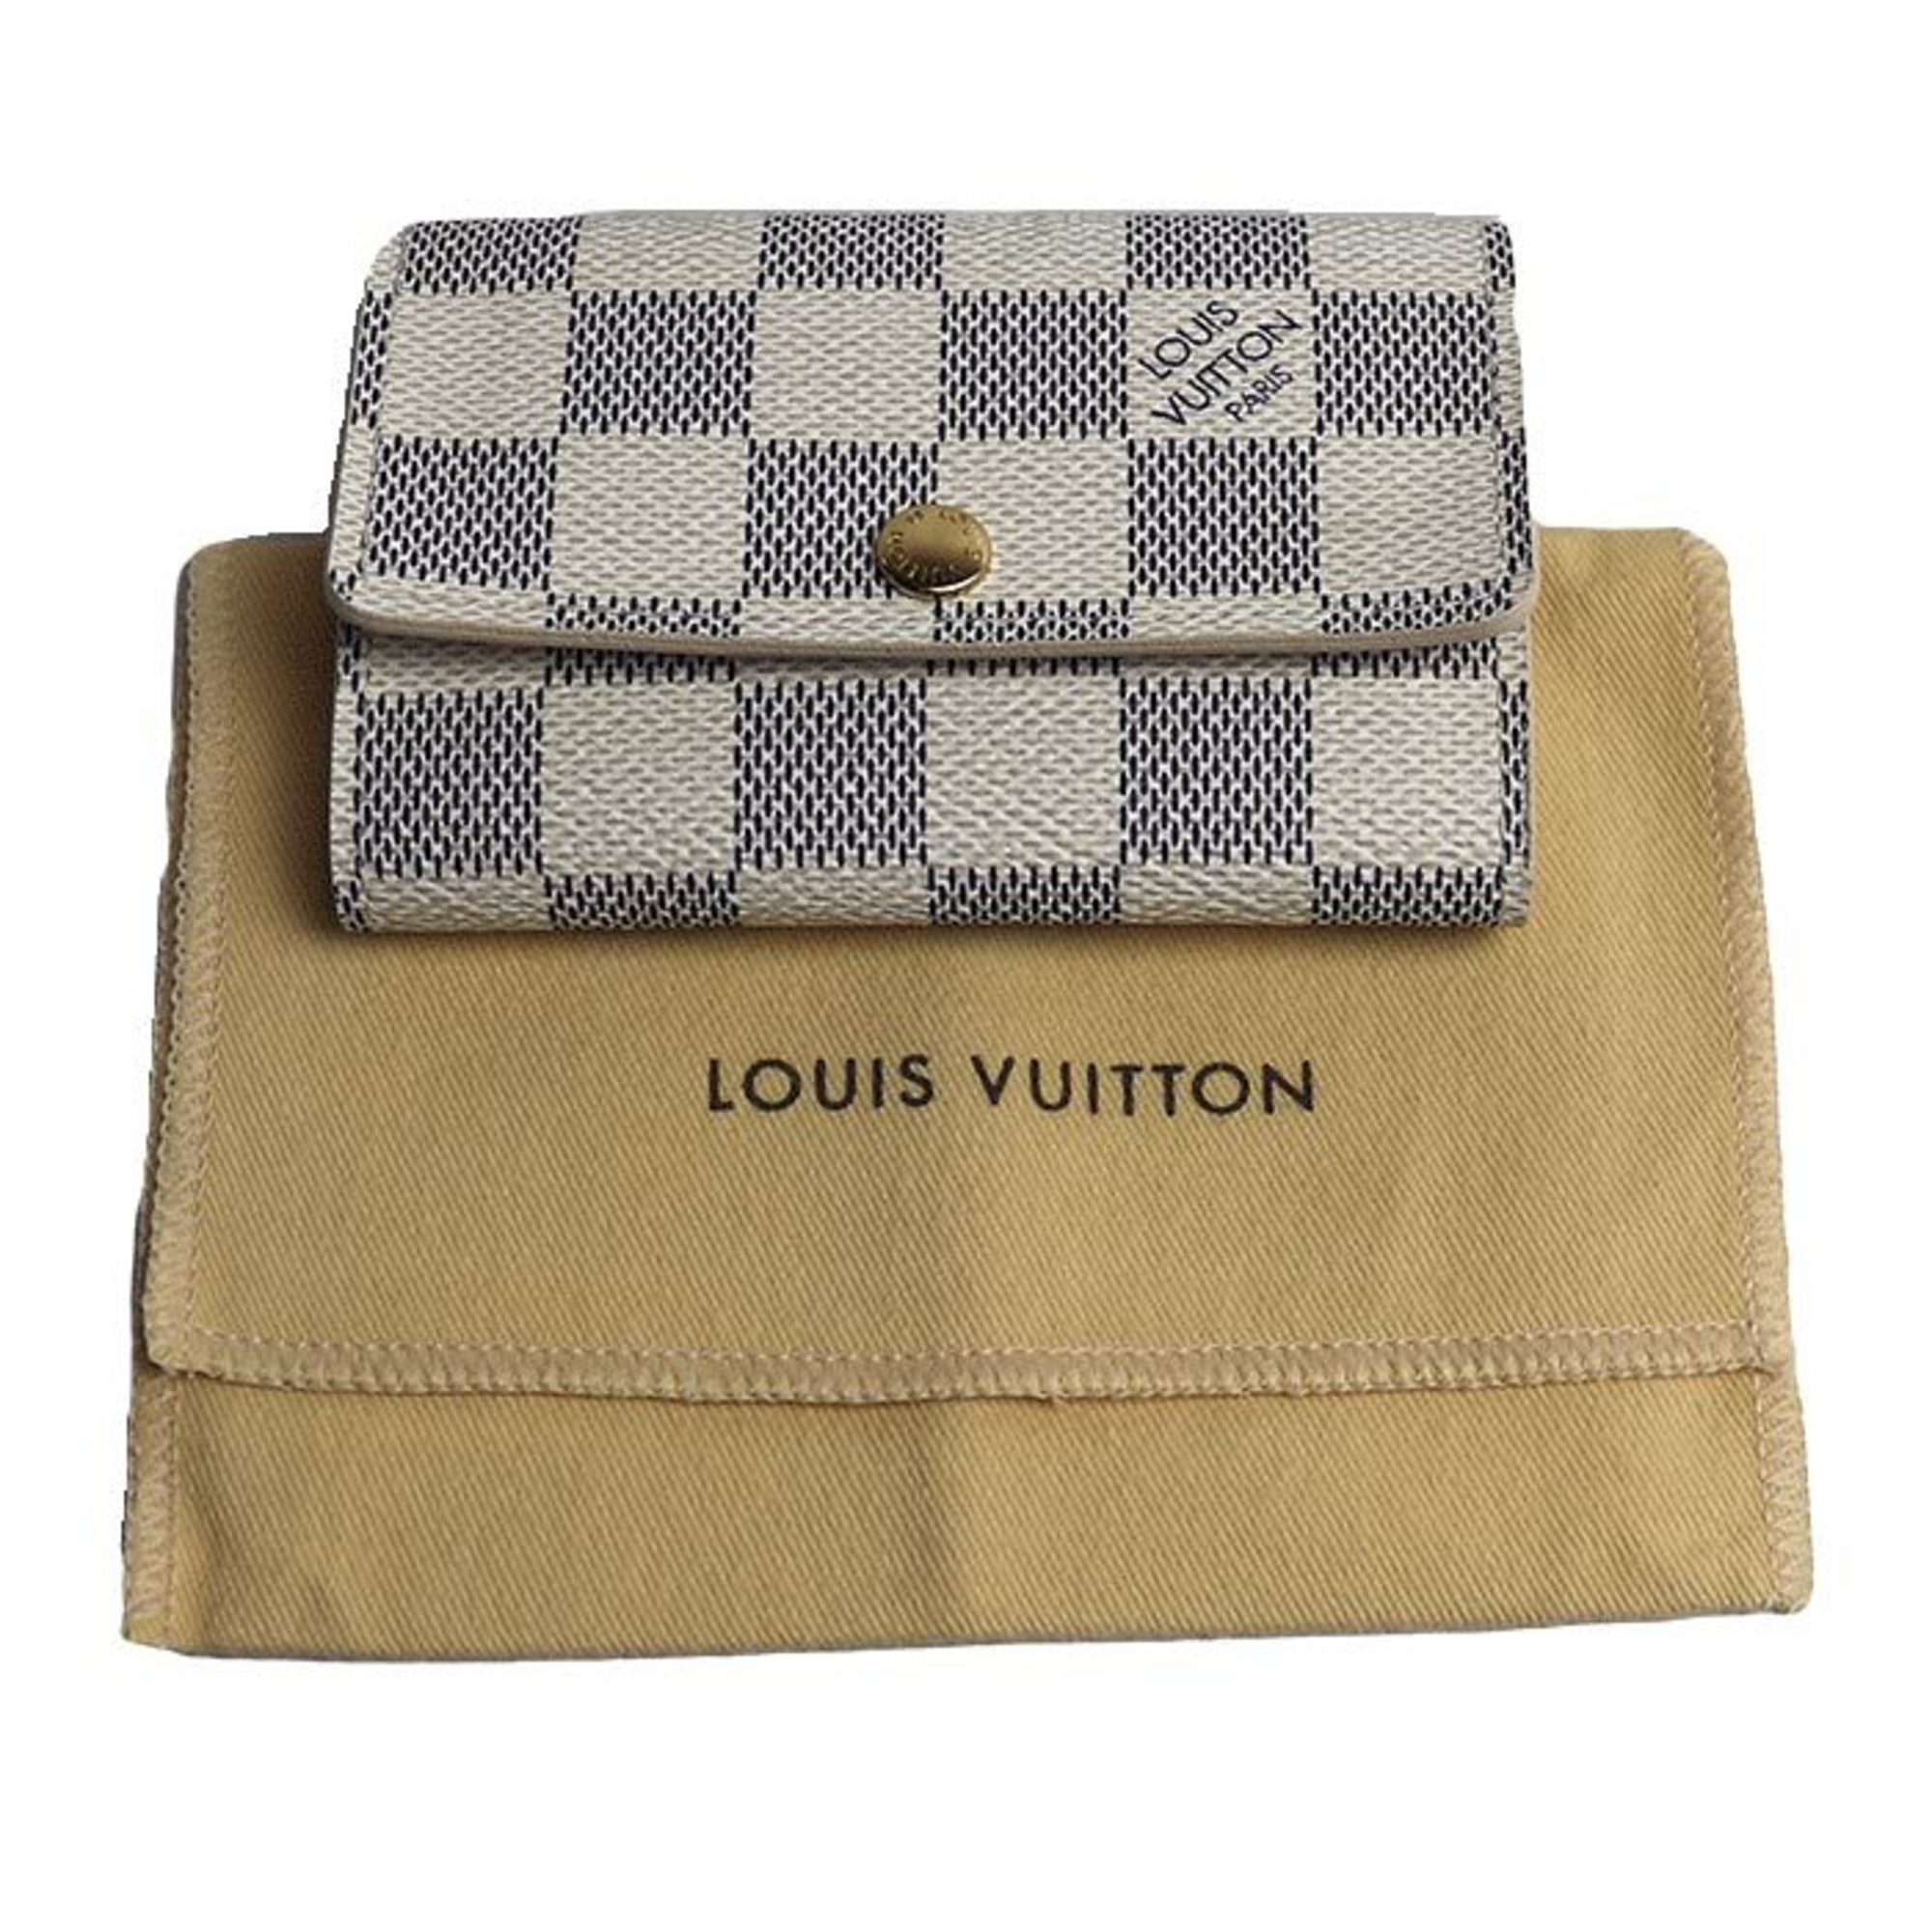 LOUIS VUITTON Louis Vuitton Multicle 6 Key Case Damier Azur White N61745 CT4059 Men's Women's